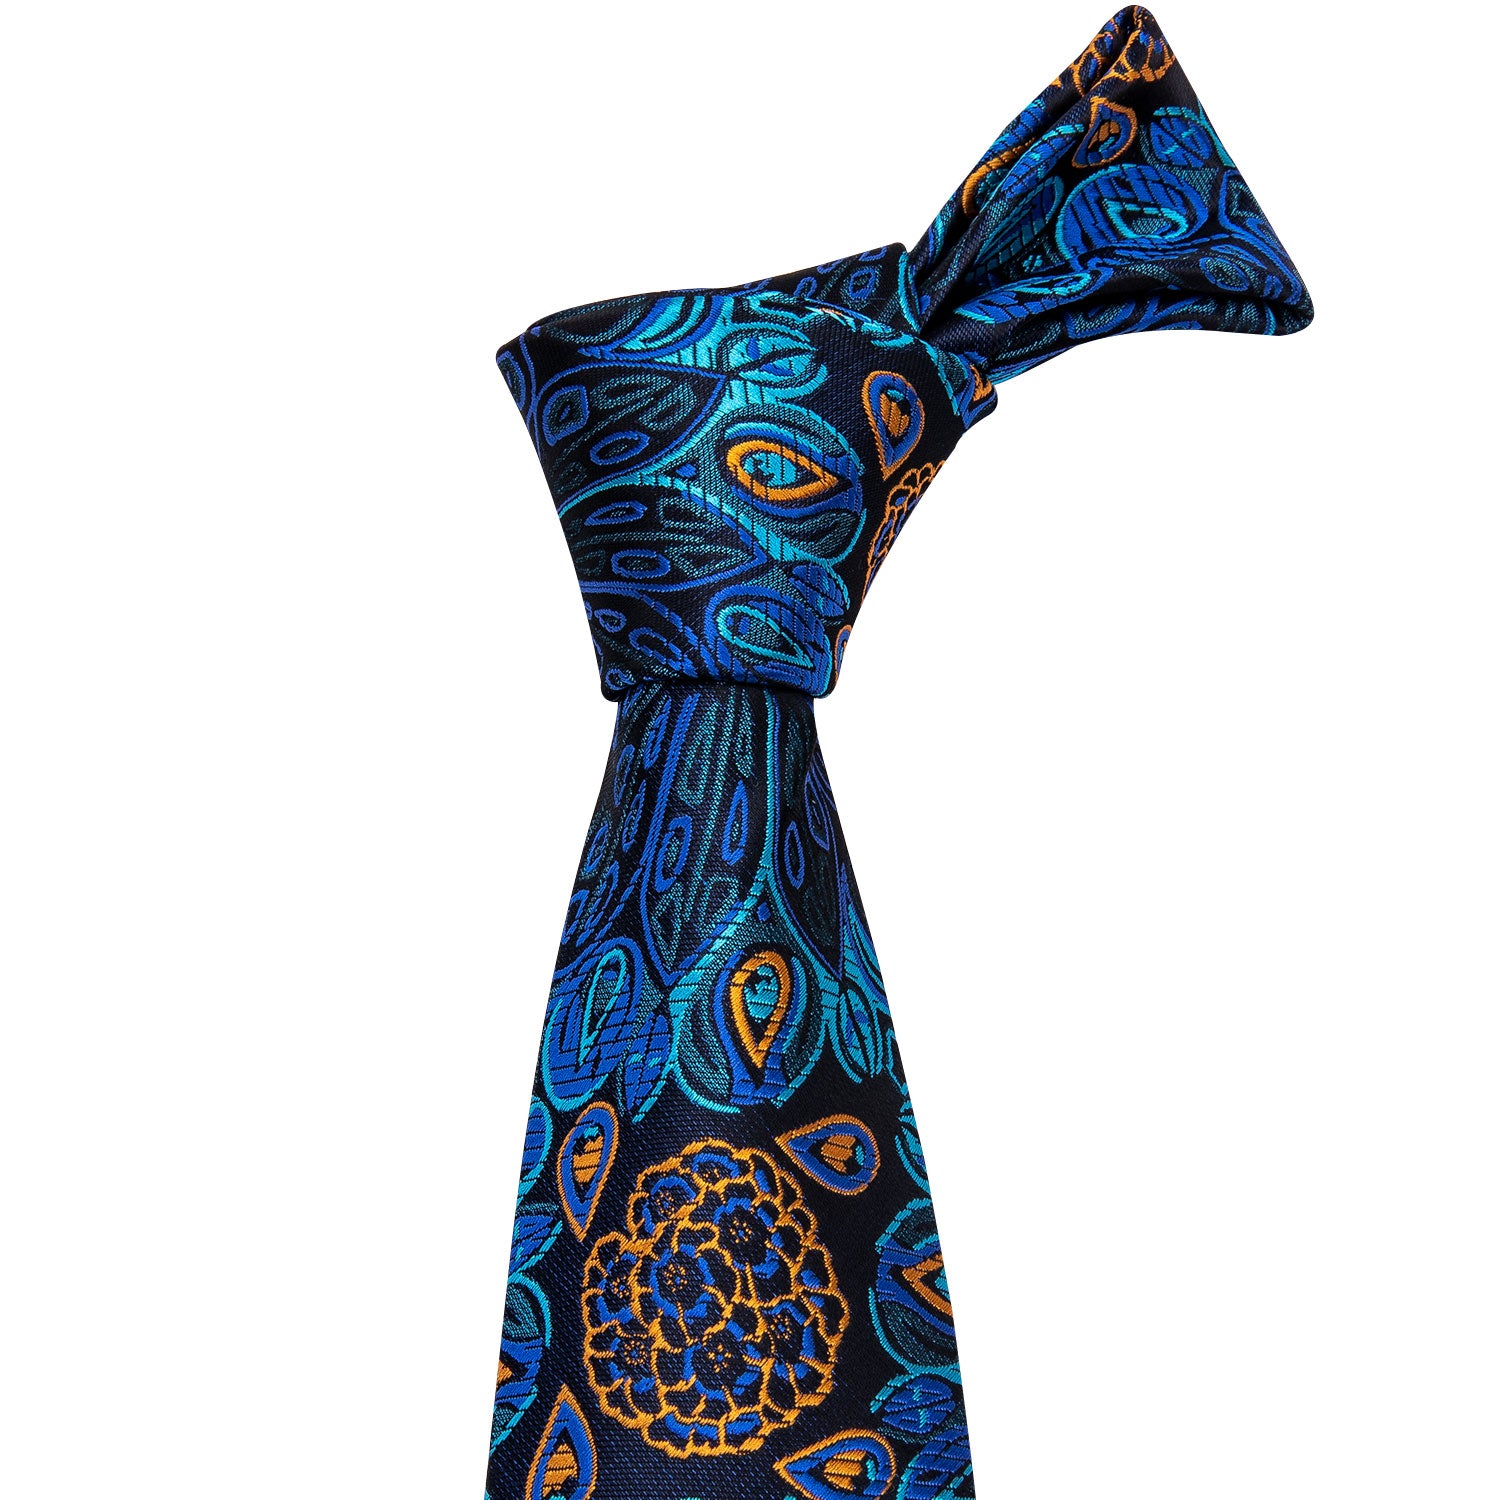 Fantastic Blue Floral Tie Pocket Square Cufflinks Set